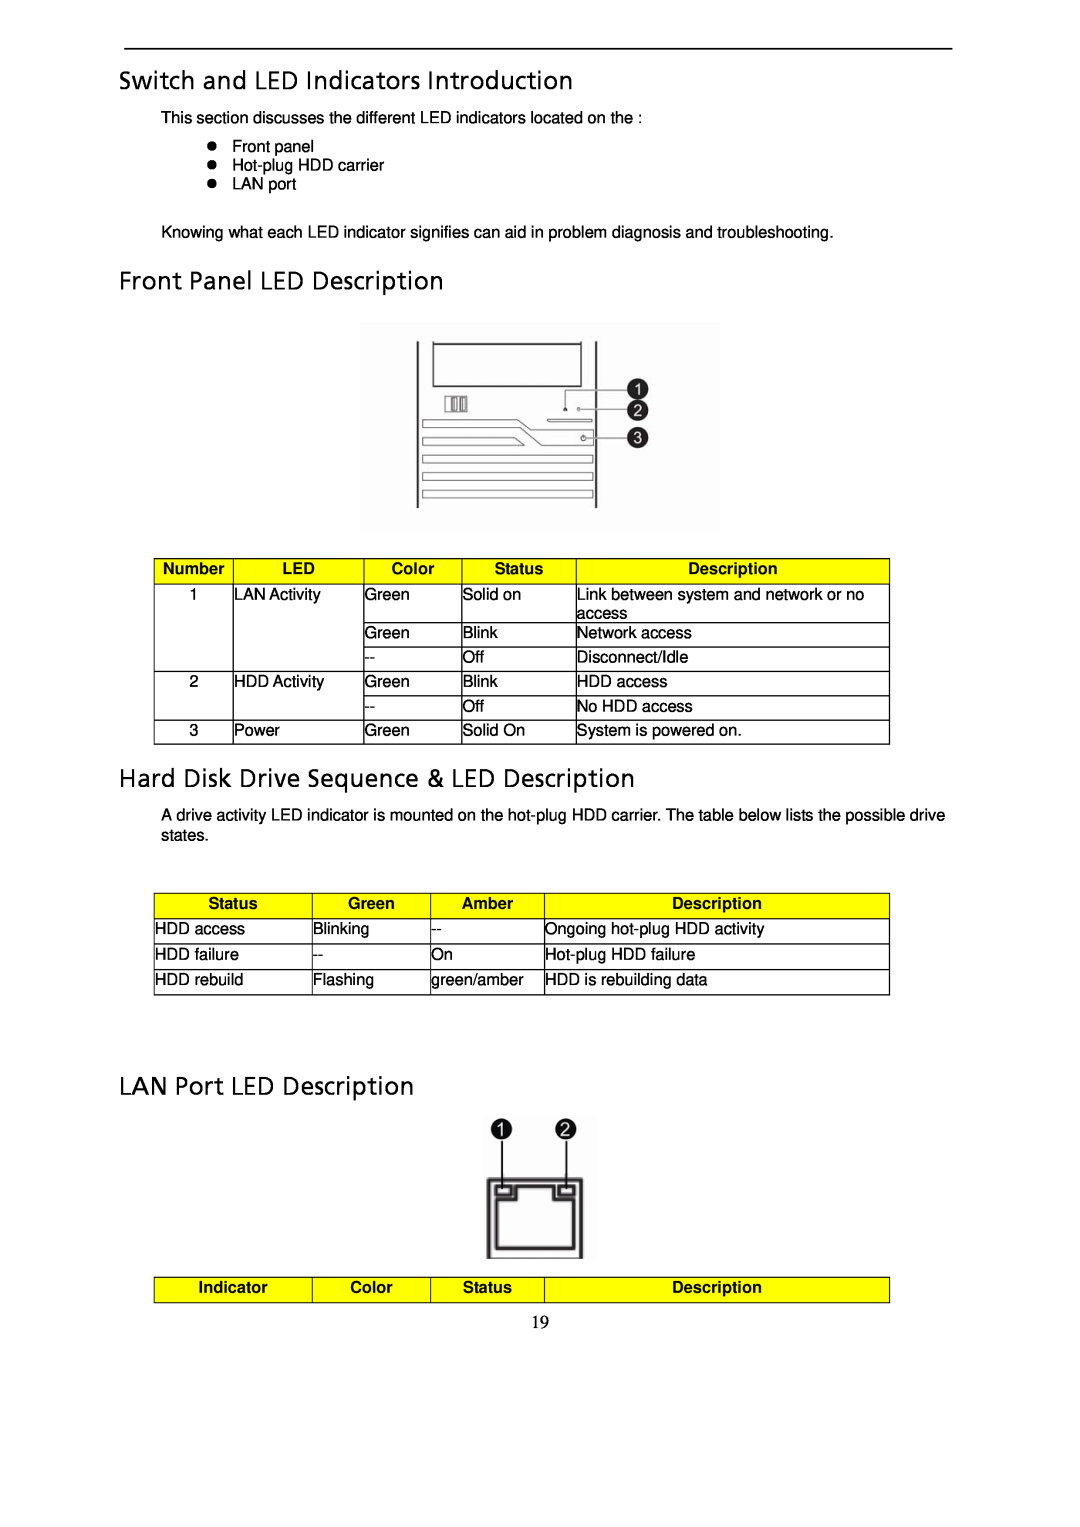 Gateway GT115 manual Switch and LED Indicators Introduction, Front Panel LED Description, LAN Port LED Description 